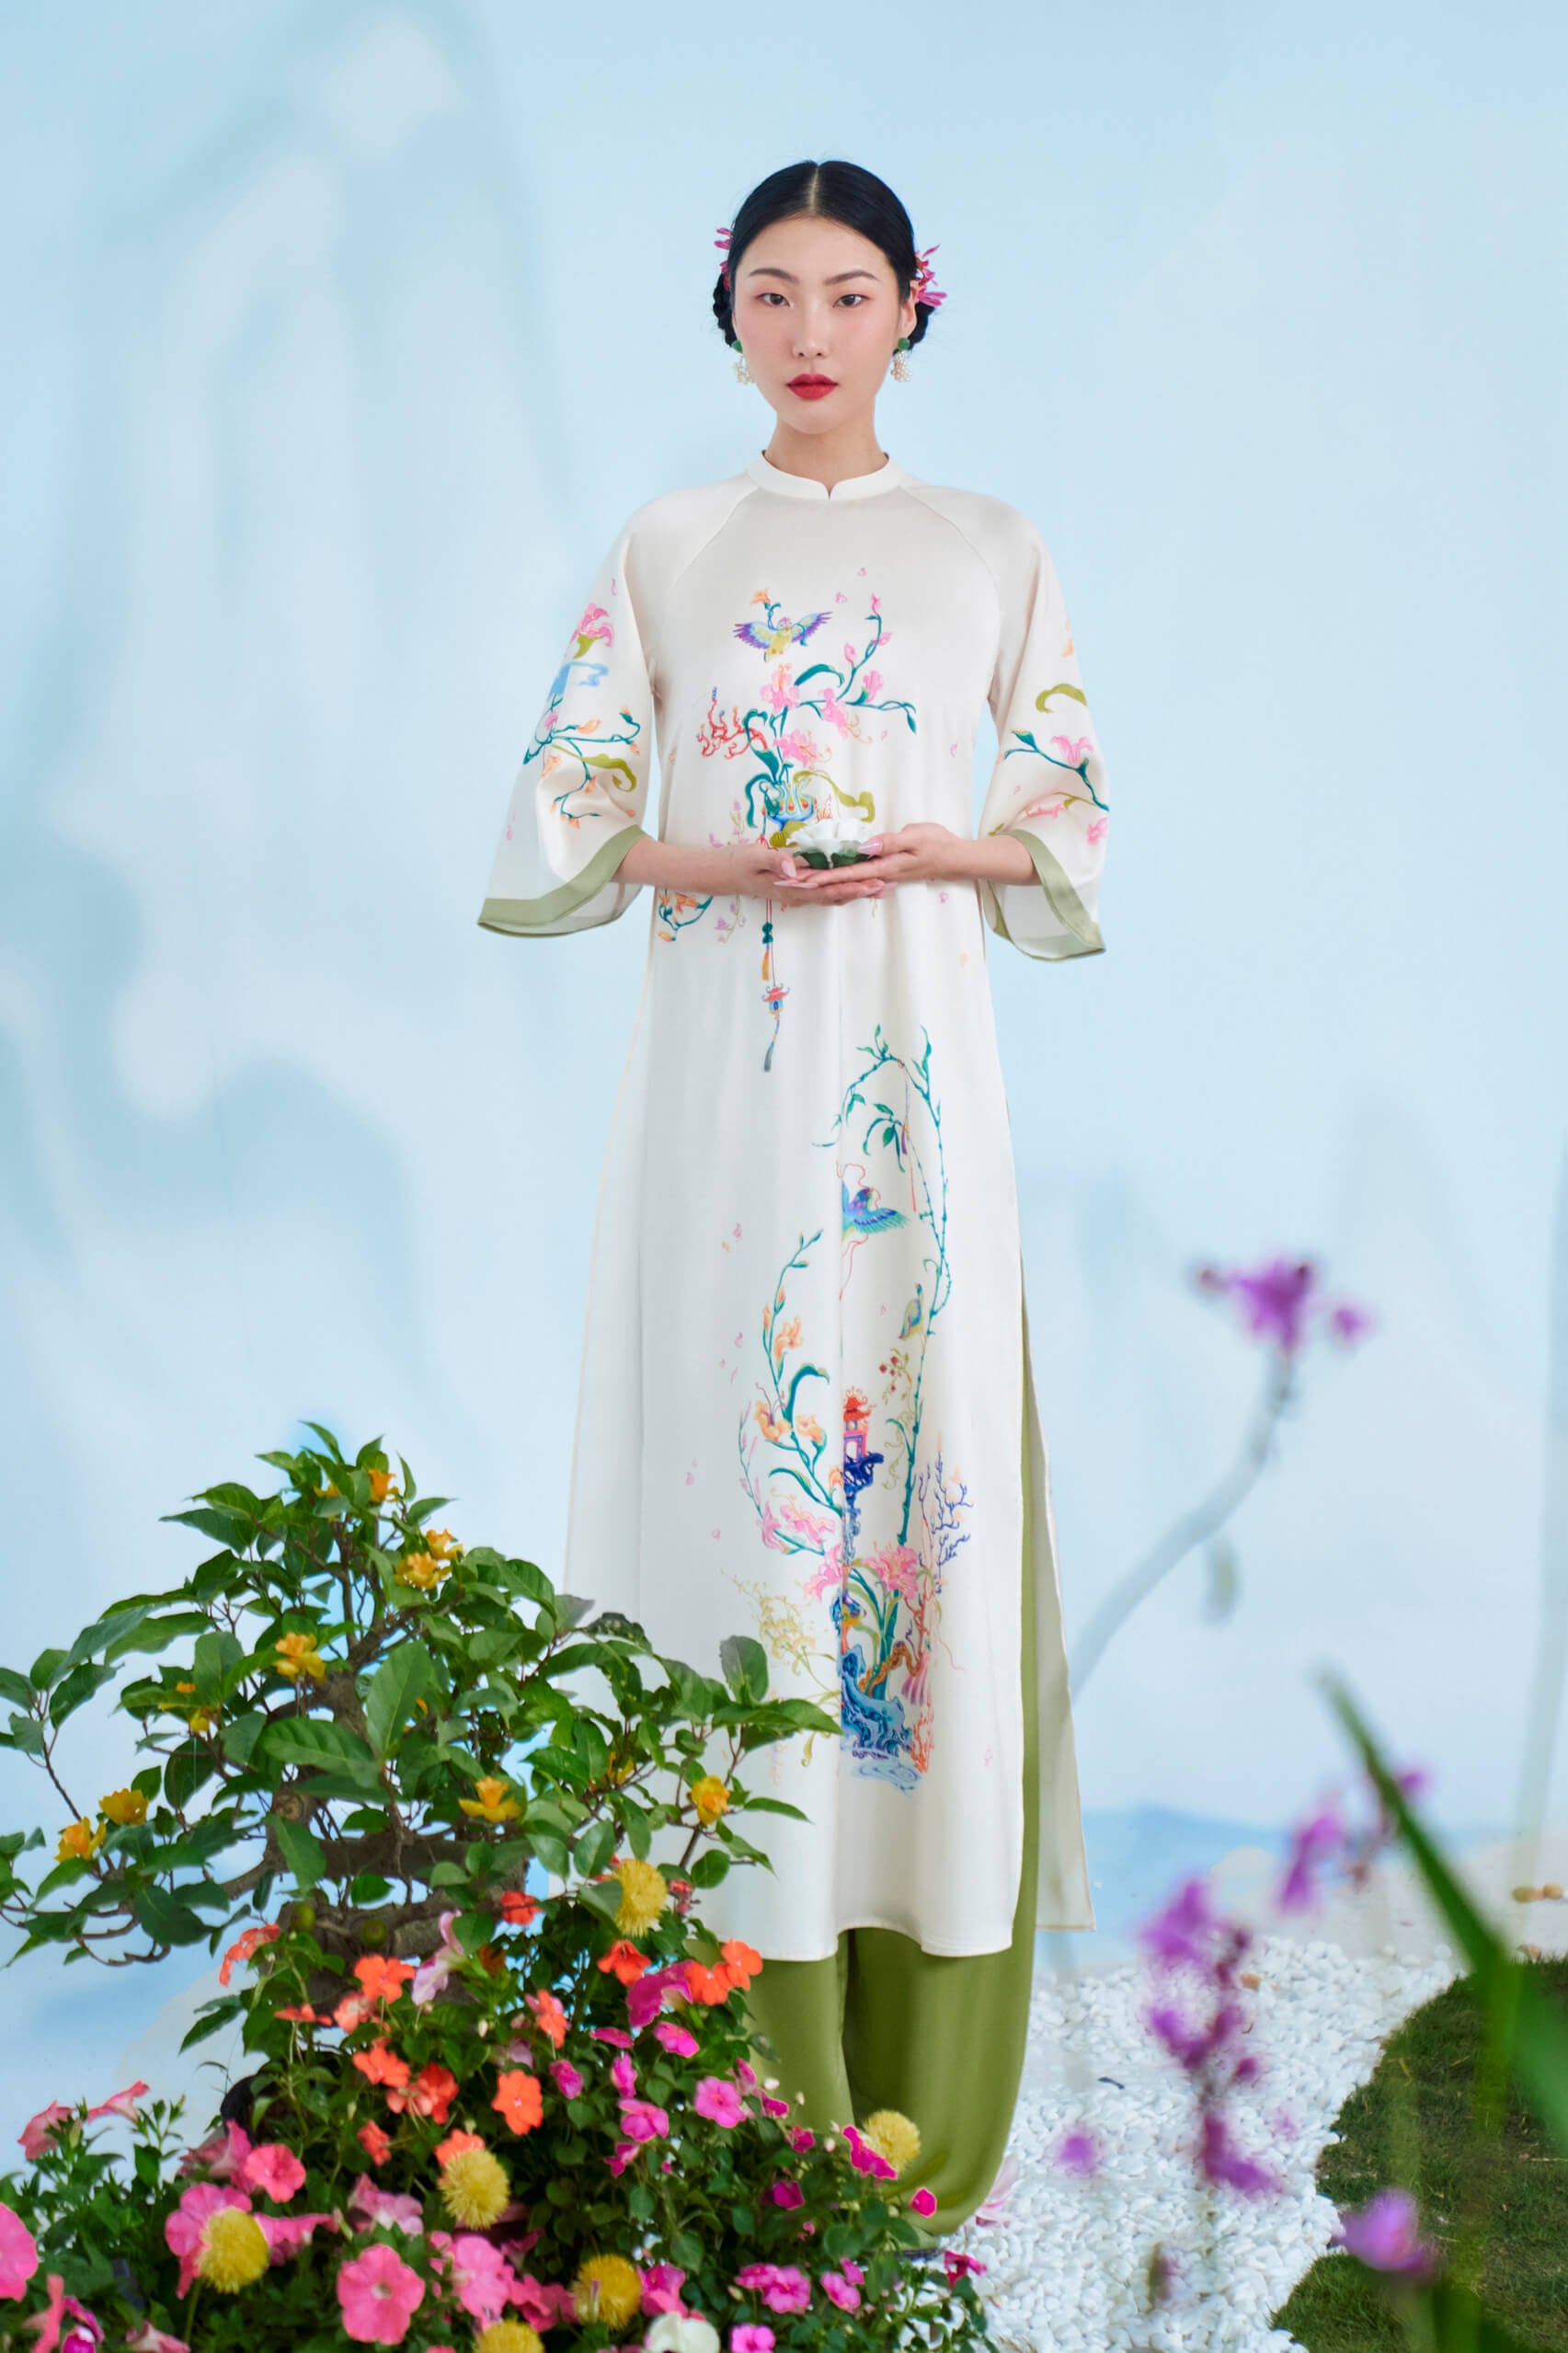 Áo dài kiềm lãn là biểu tượng về sự thanh lịch và truyền thống của phụ nữ Việt Nam. Đến với chúng tôi, bạn sẽ được chiêm ngưỡng những bộ áo dài kiềm lãn đẹp và tinh tế, làm nổi bật vẻ đẹp của phái đẹp.